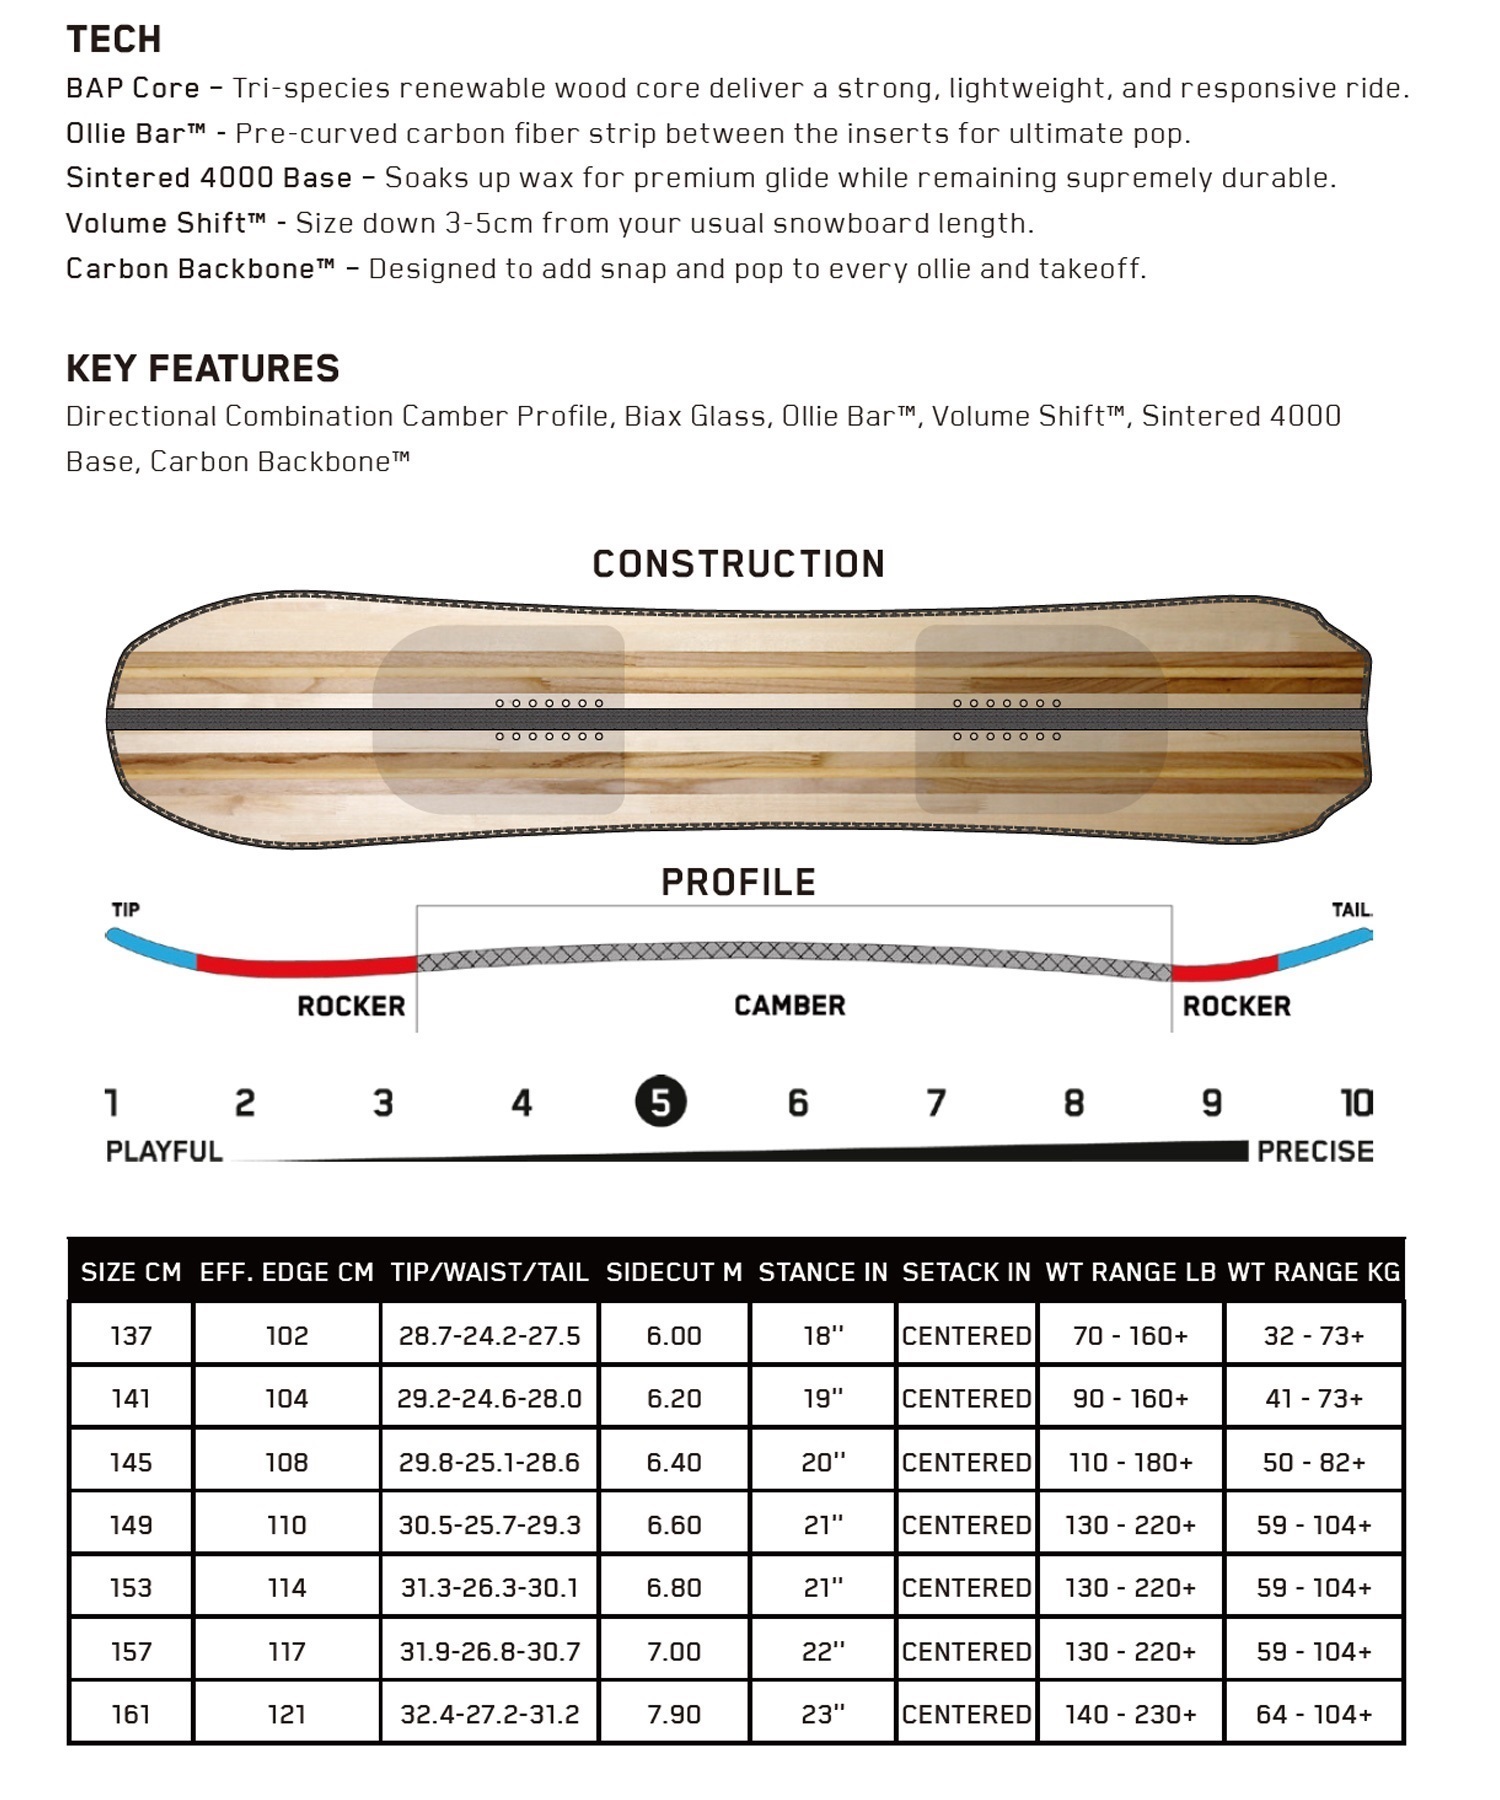 【早期購入】K2 ケーツー スノーボード 板 メンズ ALMANAC ムラサキスポーツ 24-25モデル LL A26(ONECOLOR-137cm)